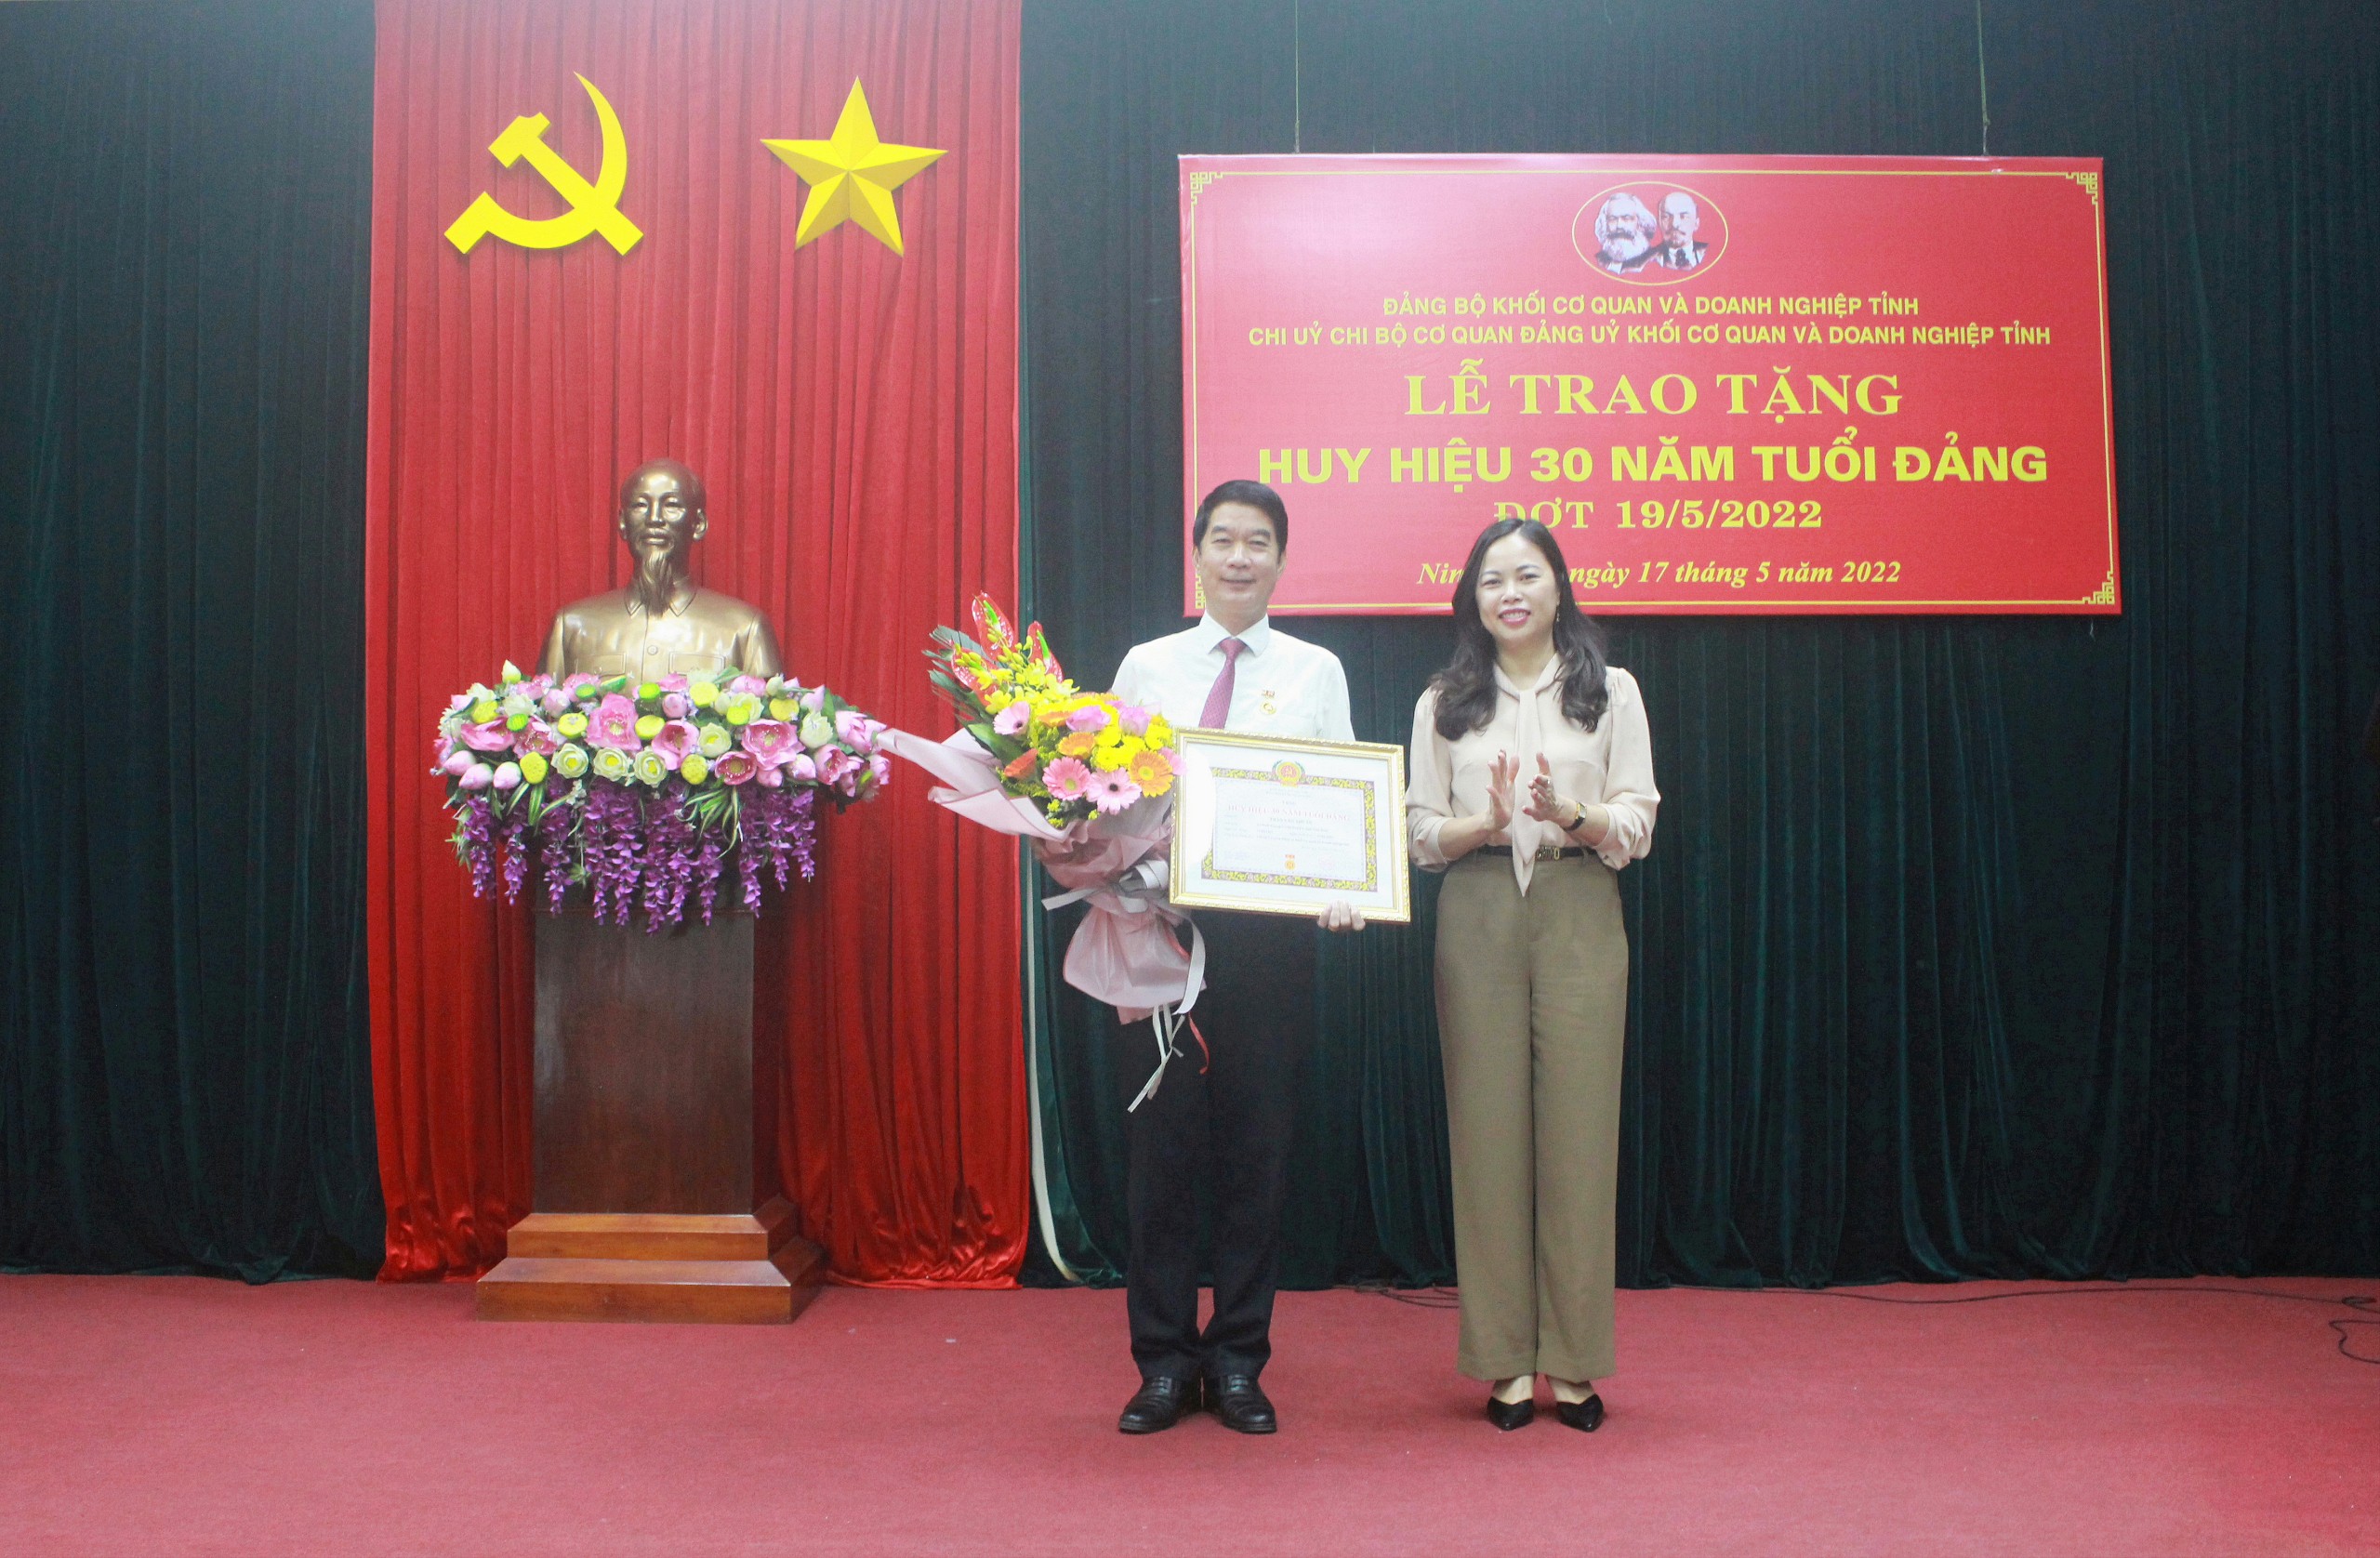 Chi bộ cơ quan Đảng ủy Khối Cơ quan và Doanh nghiệp tỉnh tổ chức trao tặng Huy hiệu 30 năm tuổi Đảng